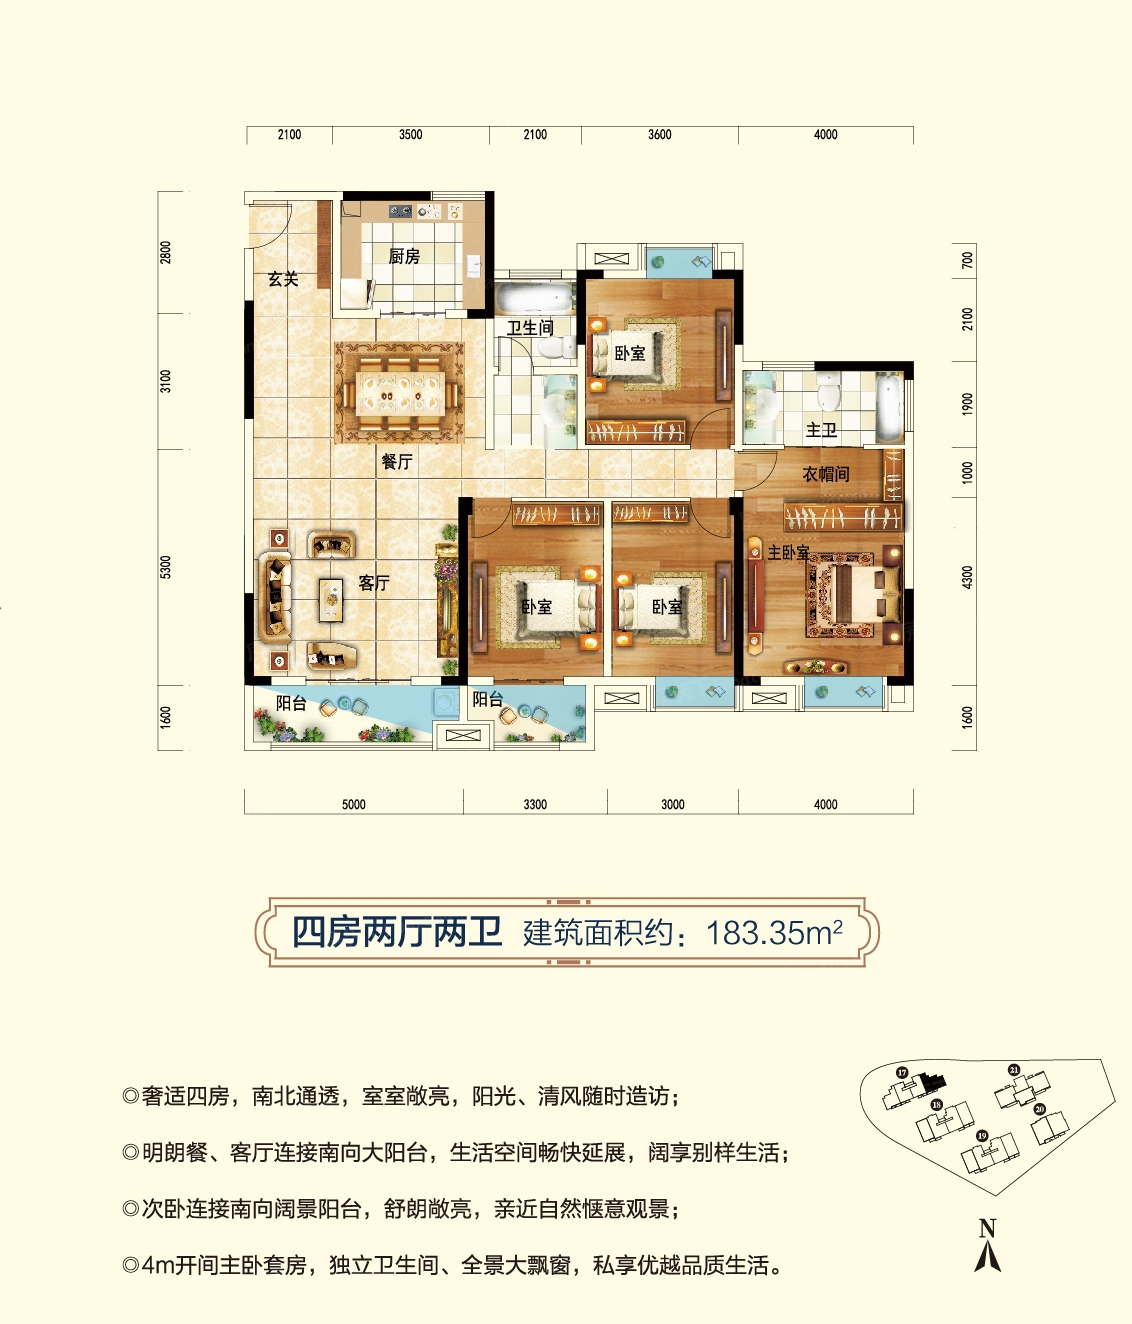 福星城户型类别:3居,4居户型面积:10200平方米